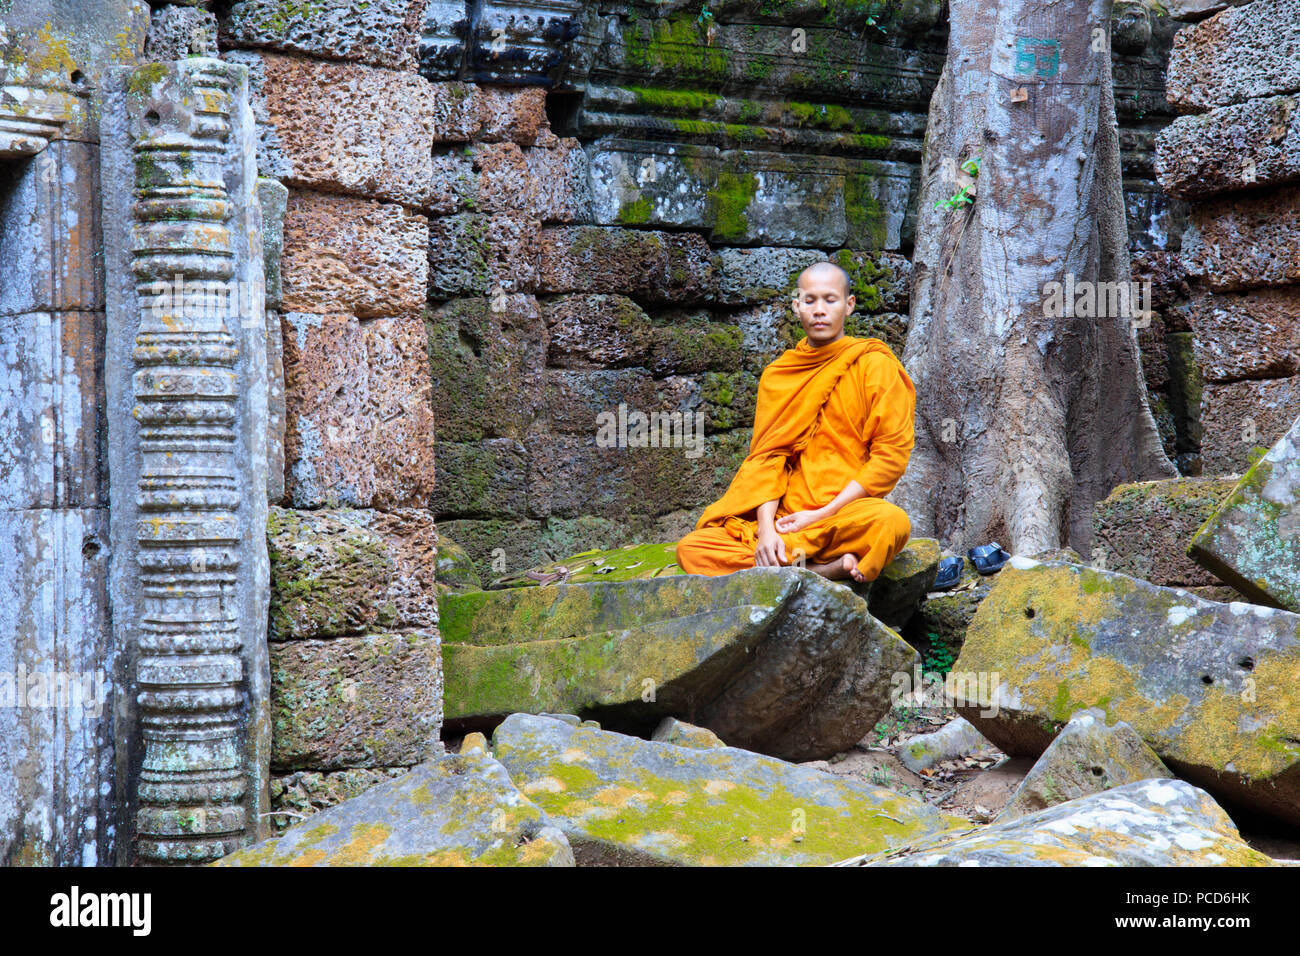 Monaco buddista seduto in una rovina tempio di Angkor, Sito Patrimonio Mondiale dell'UNESCO, Siem Reap, Cambogia, Indocina, Asia sud-orientale, Asia Foto Stock